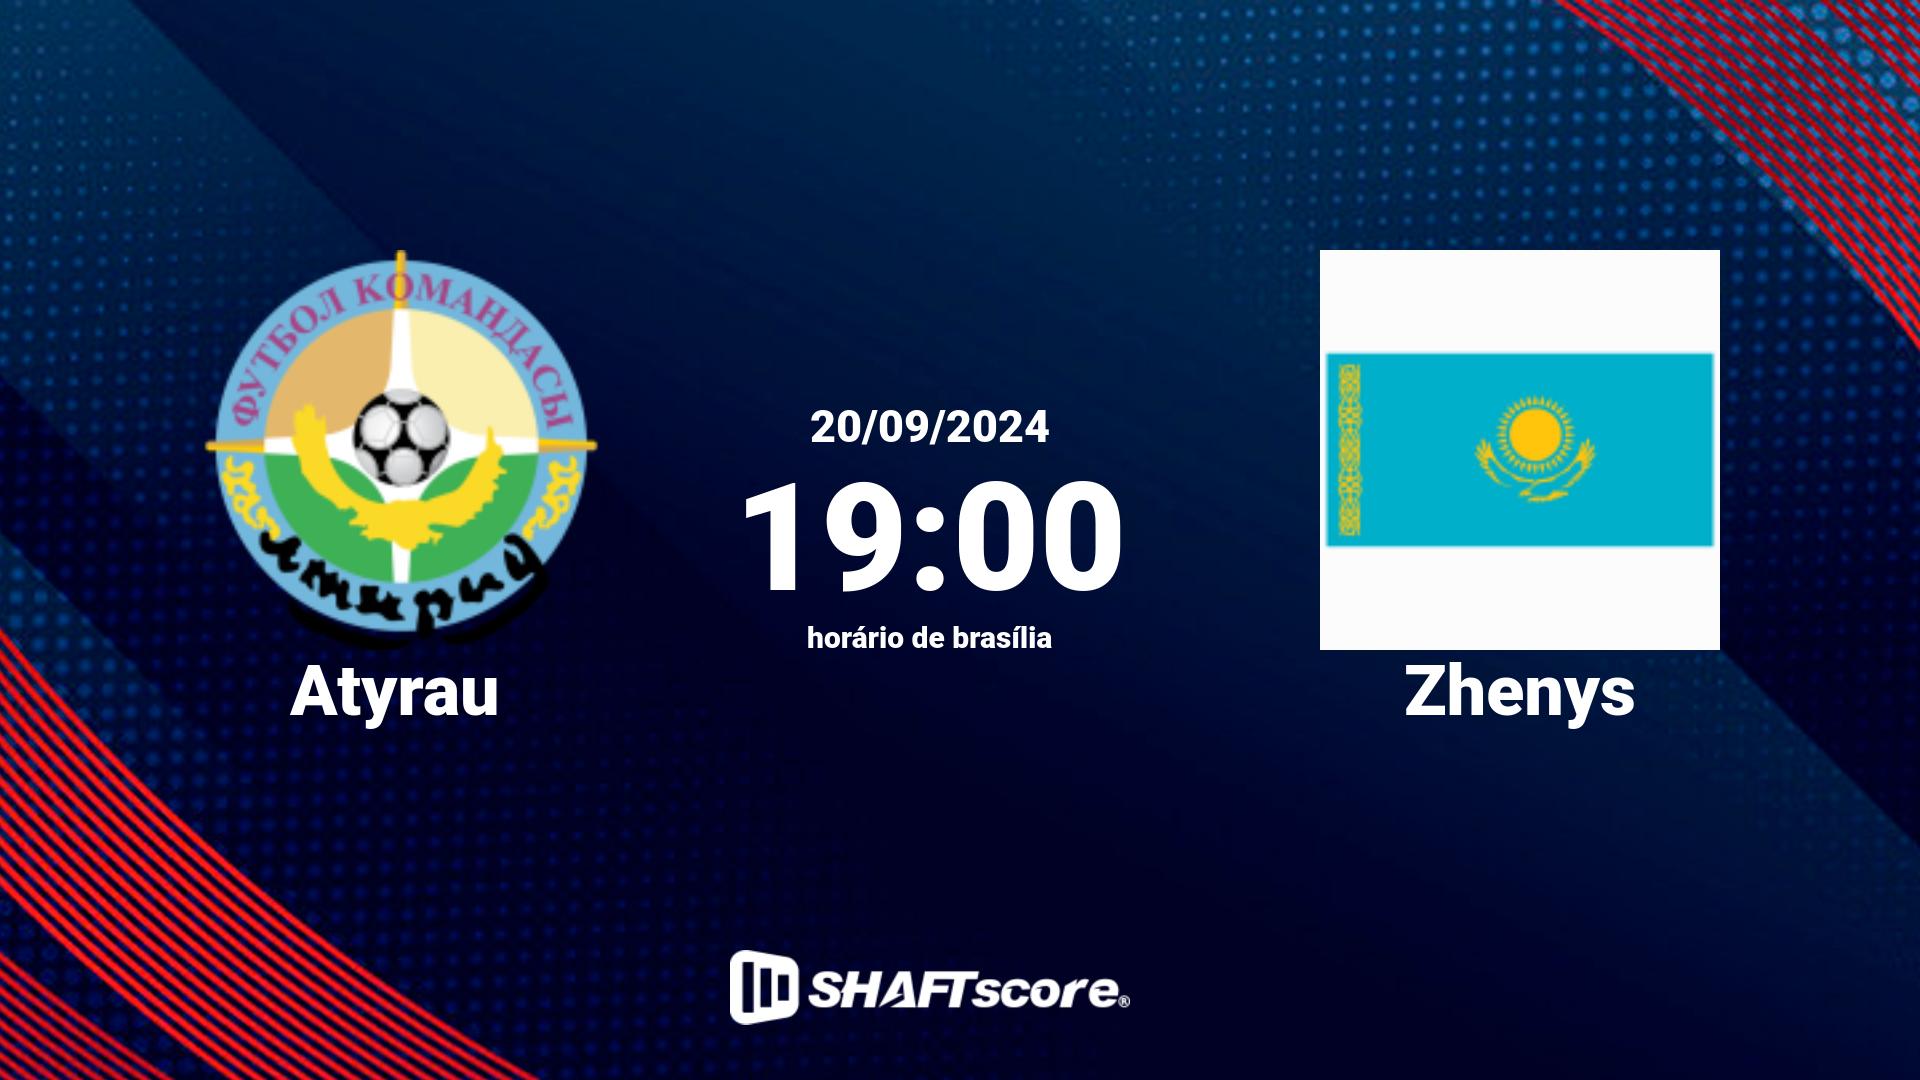 Estatísticas do jogo Atyrau vs Zhenys 20.09 19:00